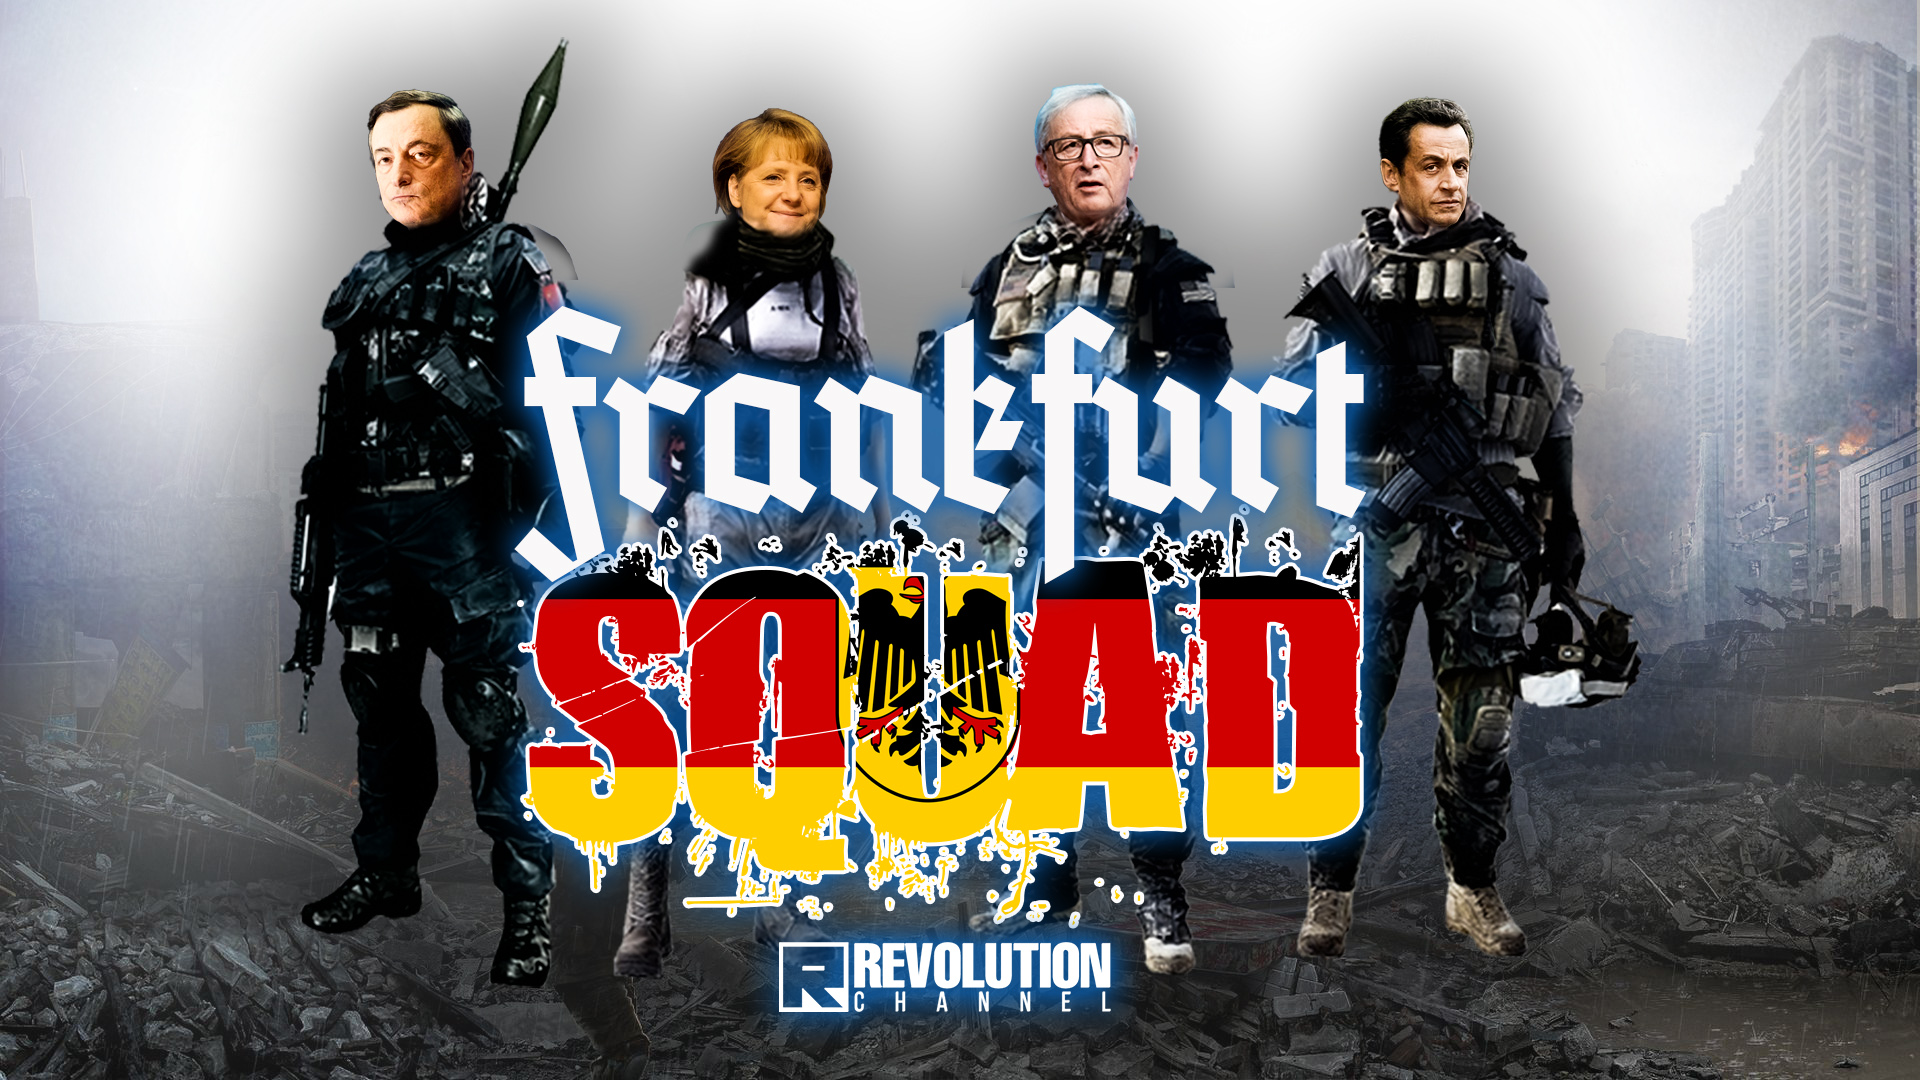 The Frankfurt Squad – Storia del golpe che uccise la democrazia in Italia￼